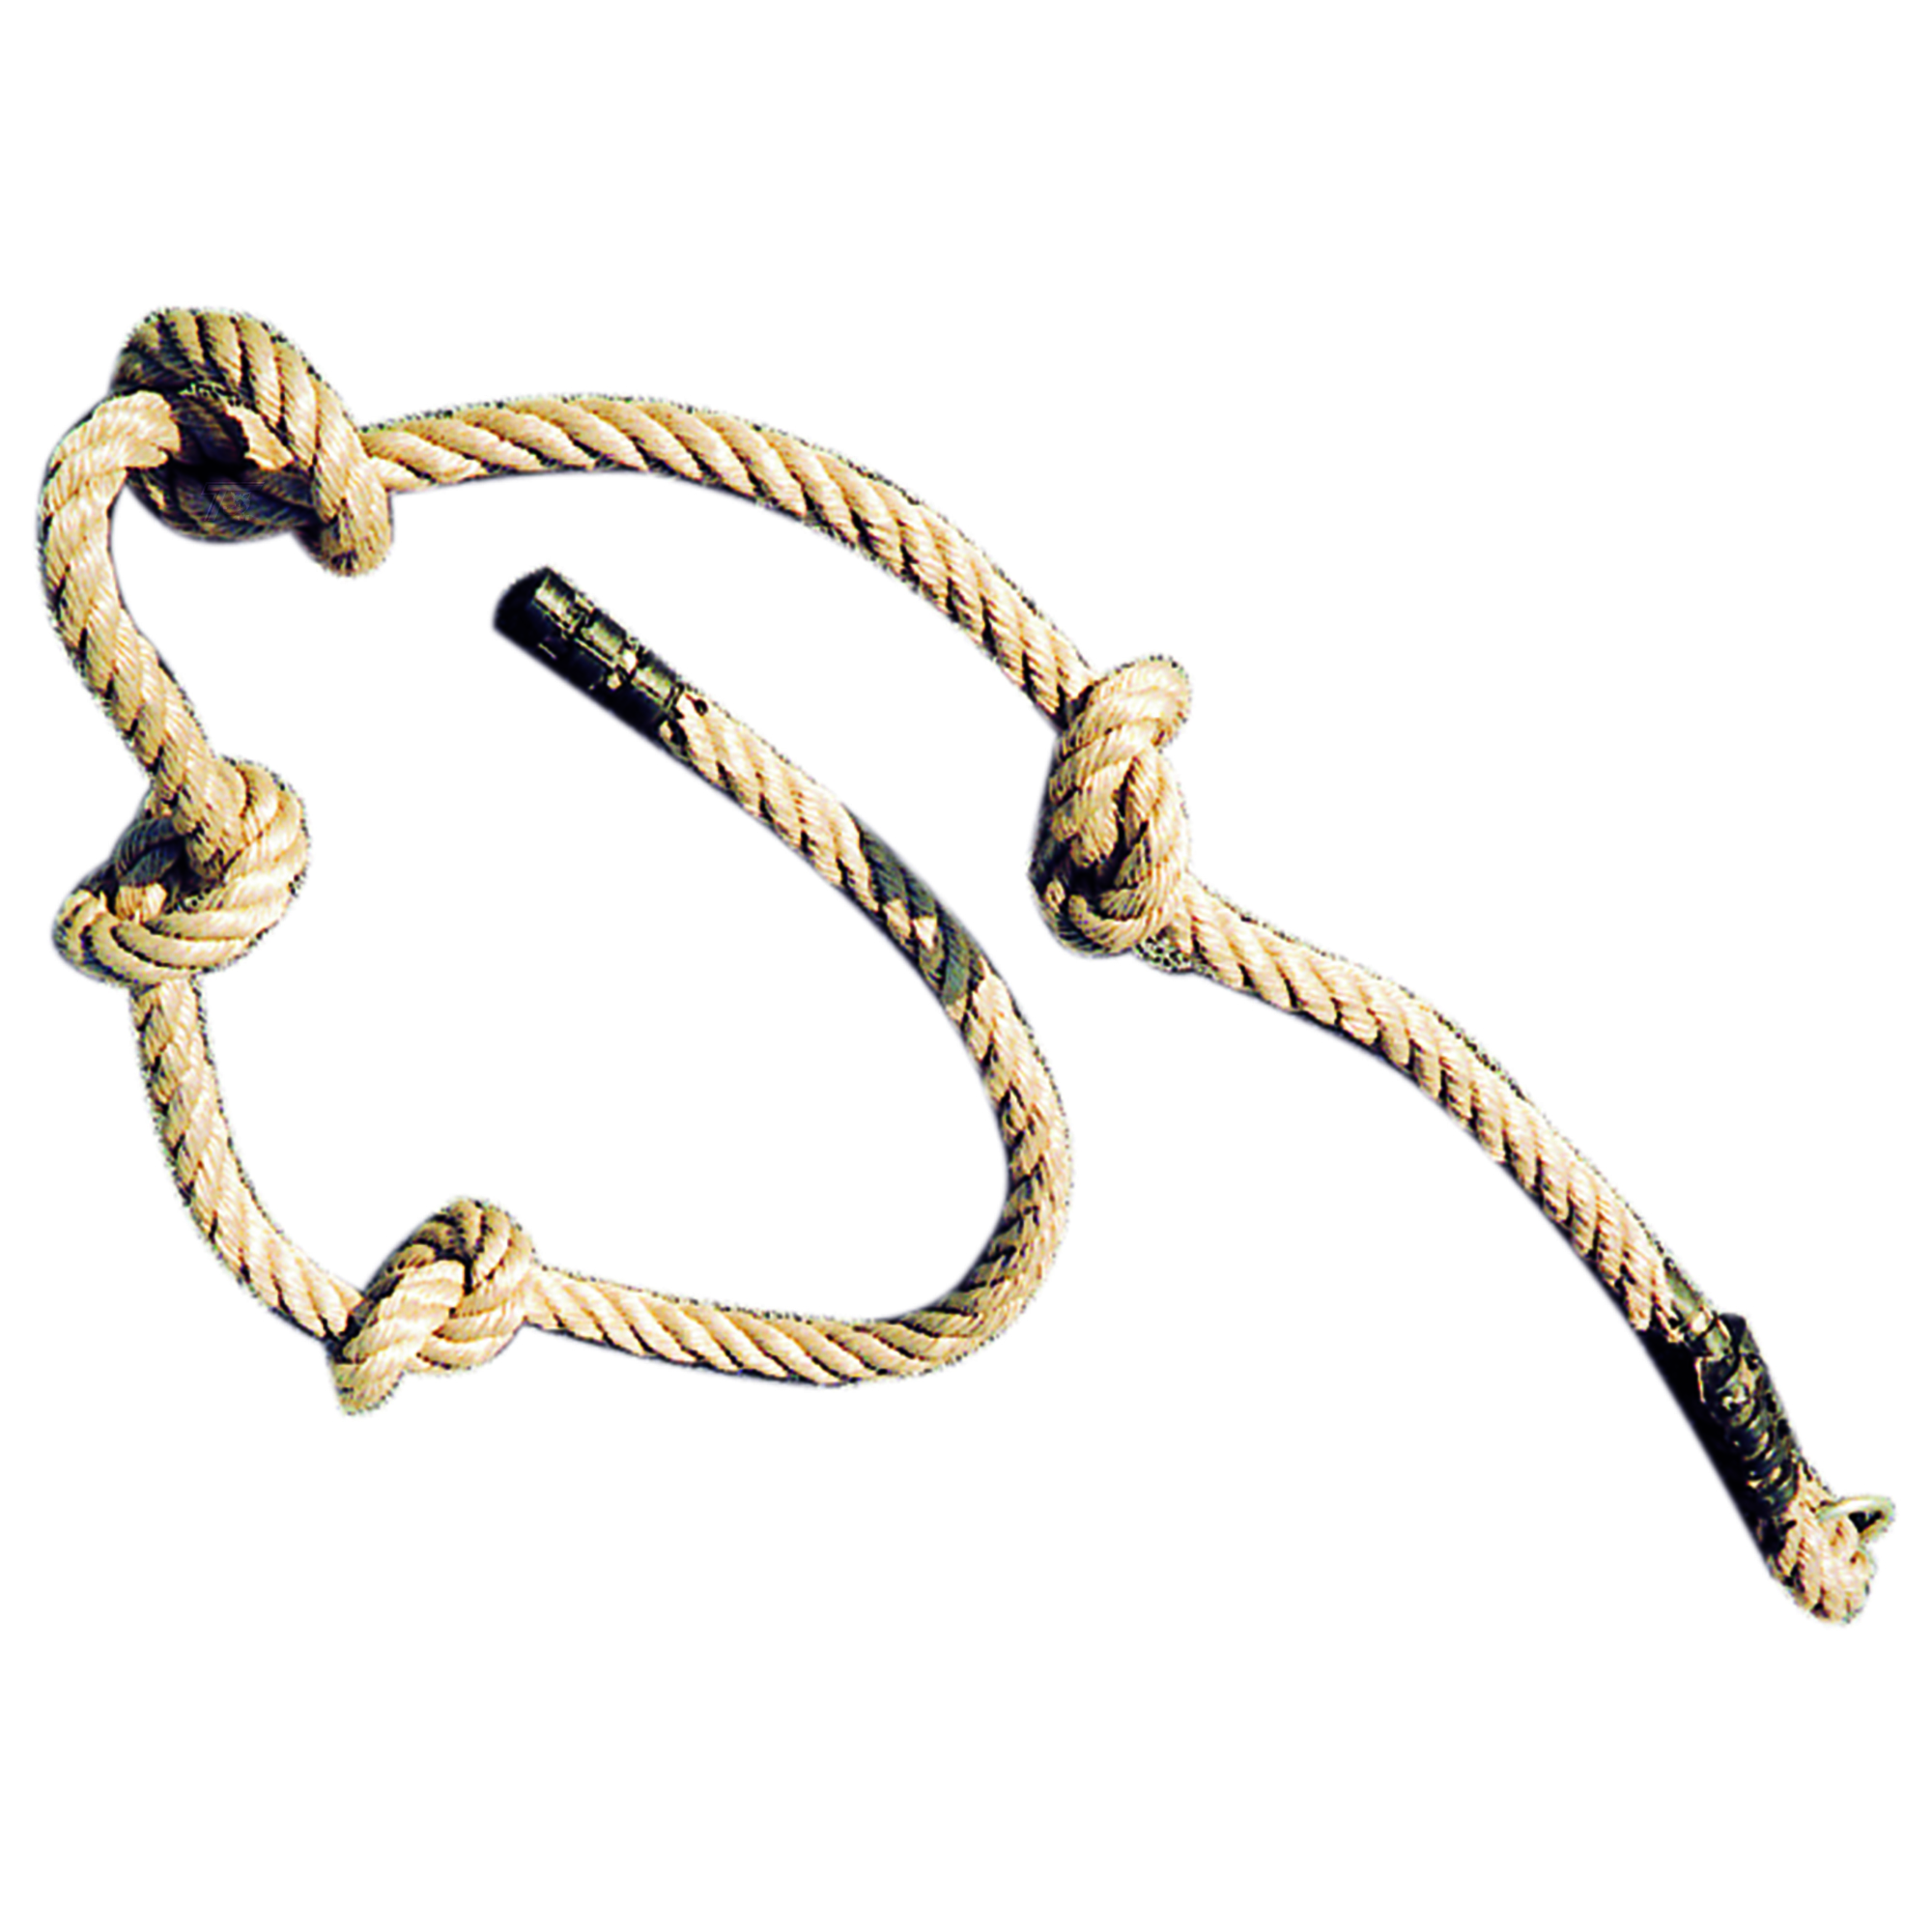 Speelgarnituur Knopen touw 250 cm lang